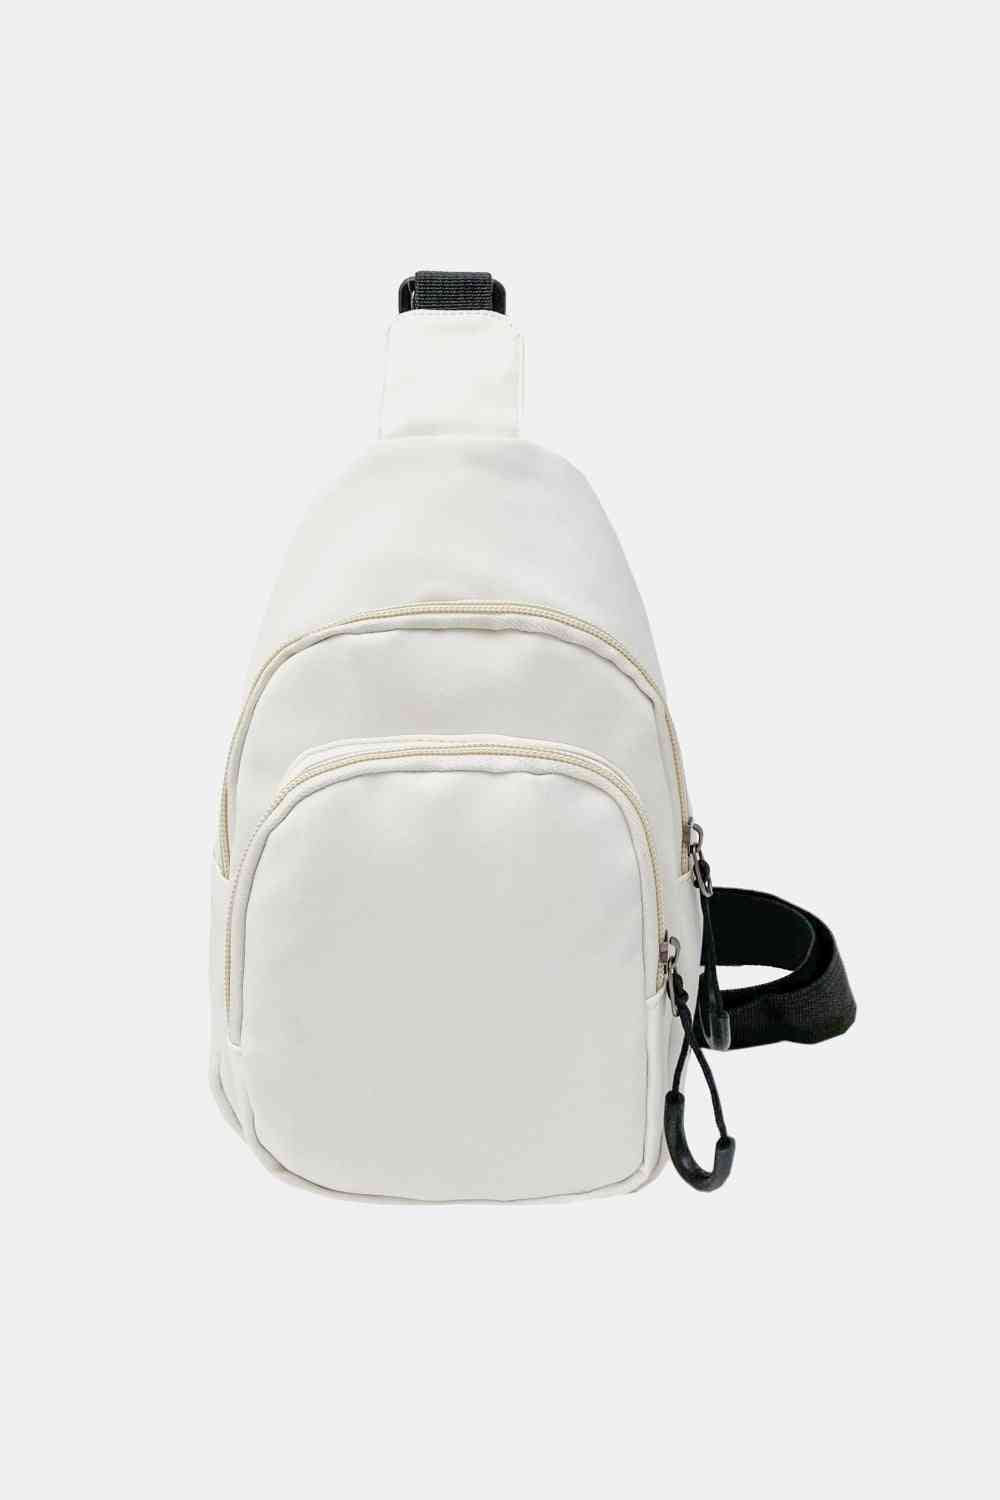 Contrast Strap Nylon Sling Bag Backpacks Trendsi White One Size 